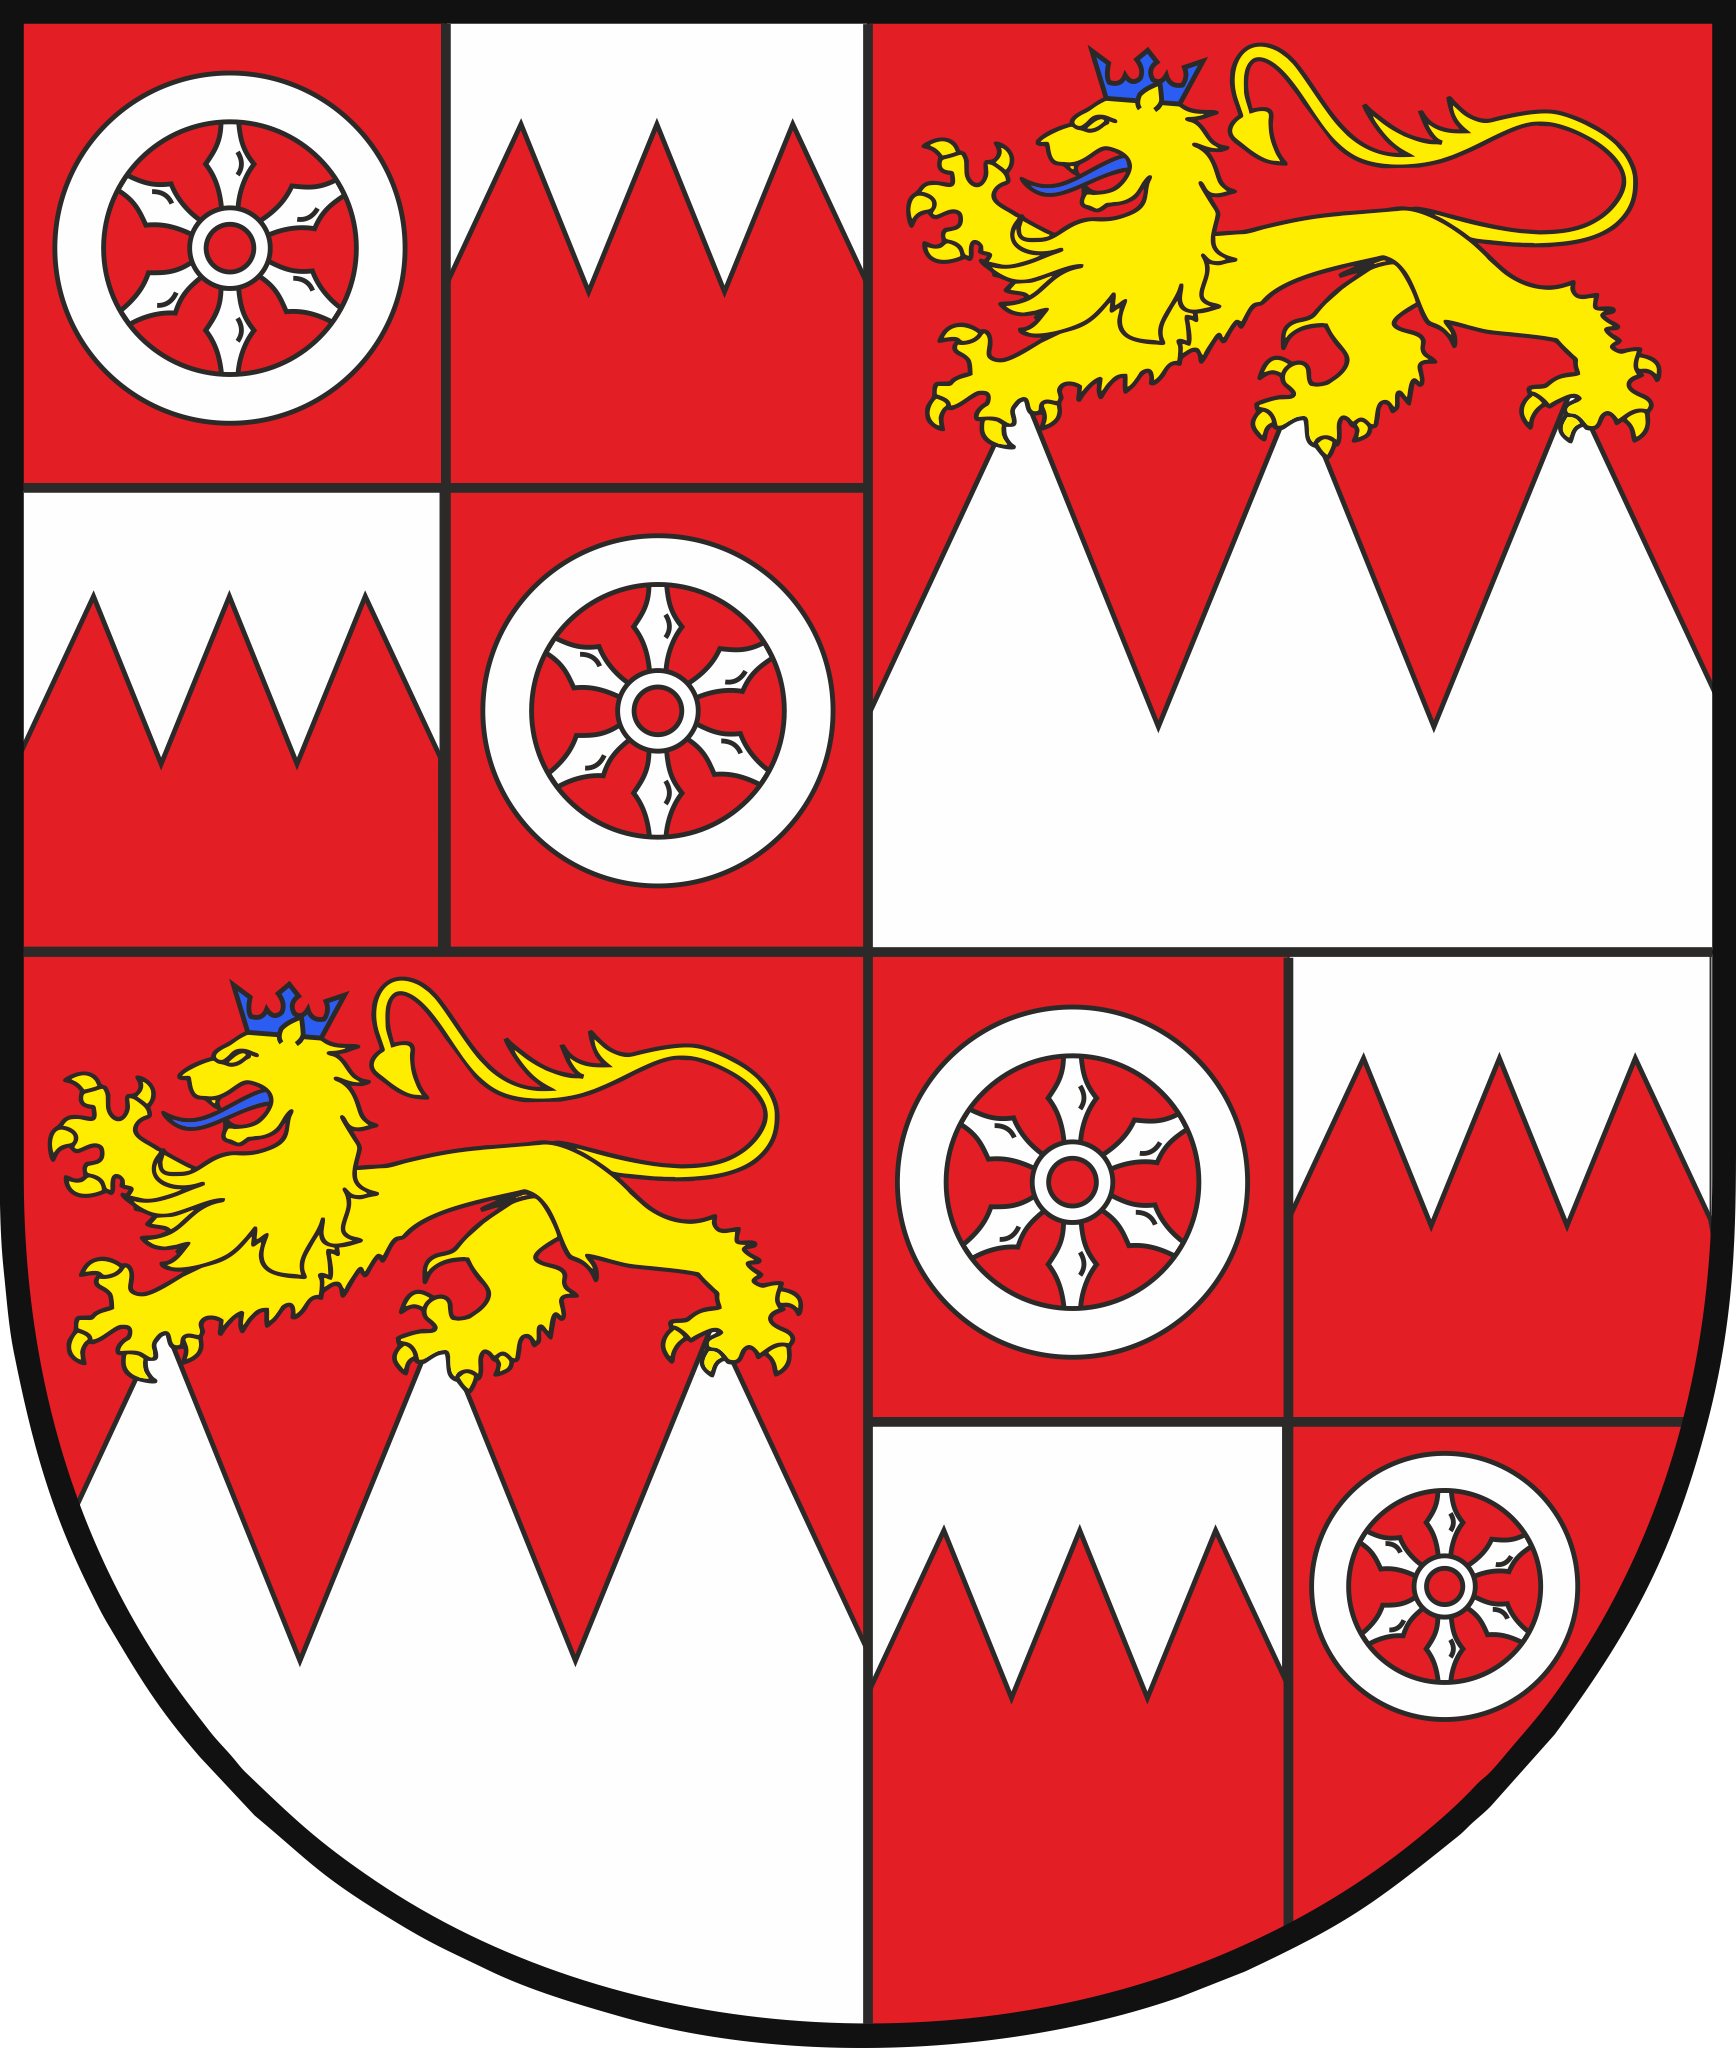 Wappen des Ortsteils Gravenbruch (Vorschlag der FDP im Ortsbeirat Gravenbruch vom 6. Juli 2018)